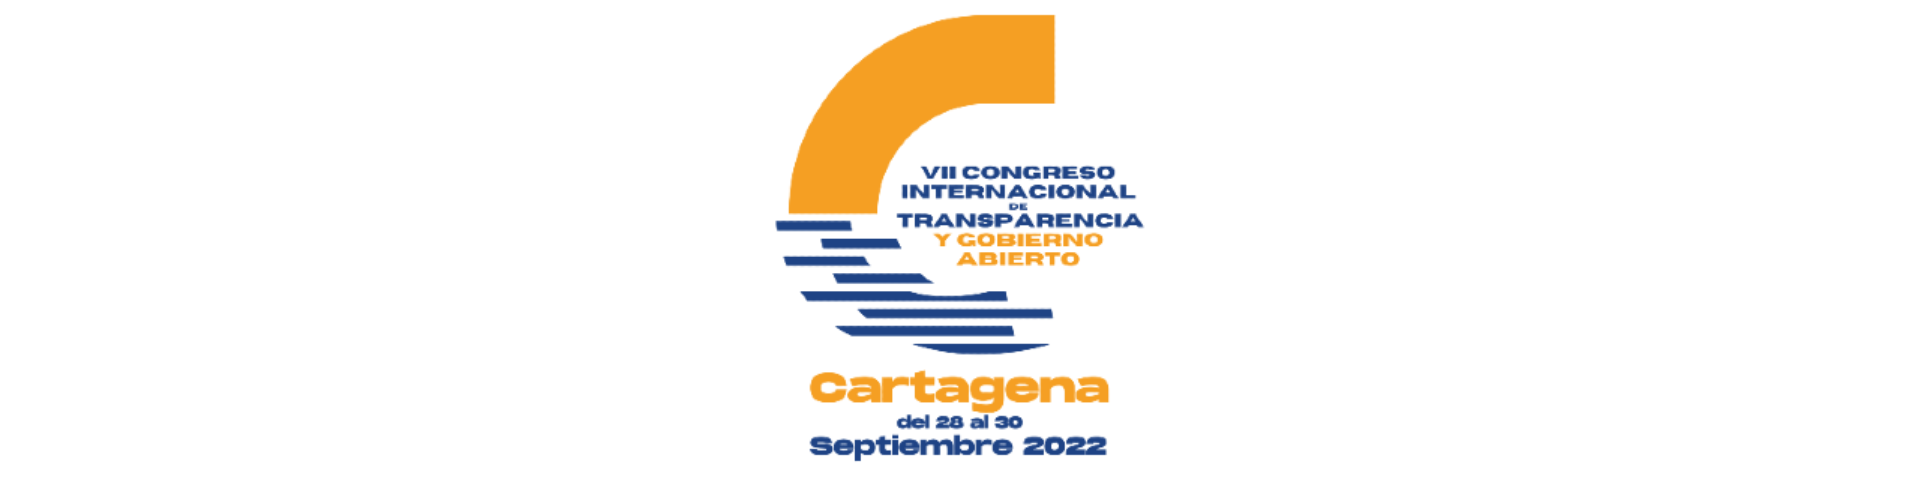 VII Congreso Internacional de la Transparencia